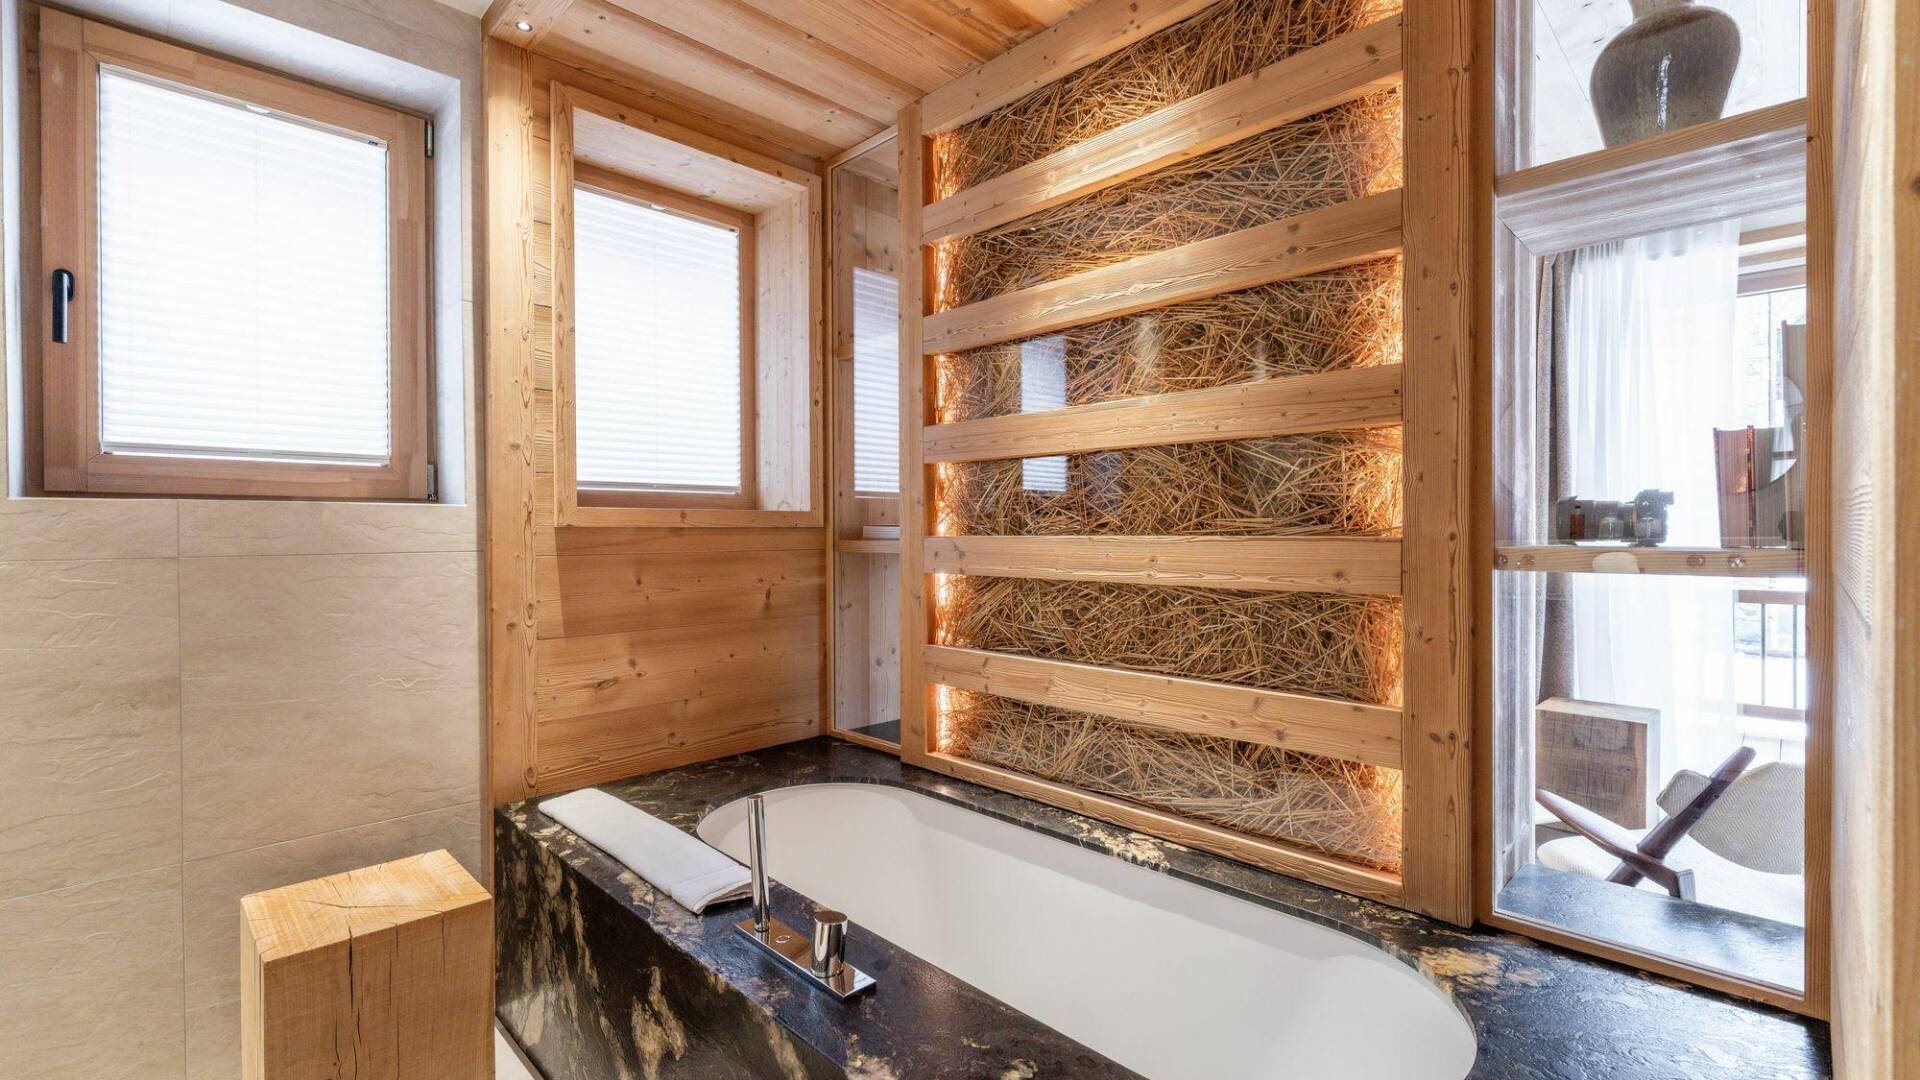 en suite bathroom with bath tub